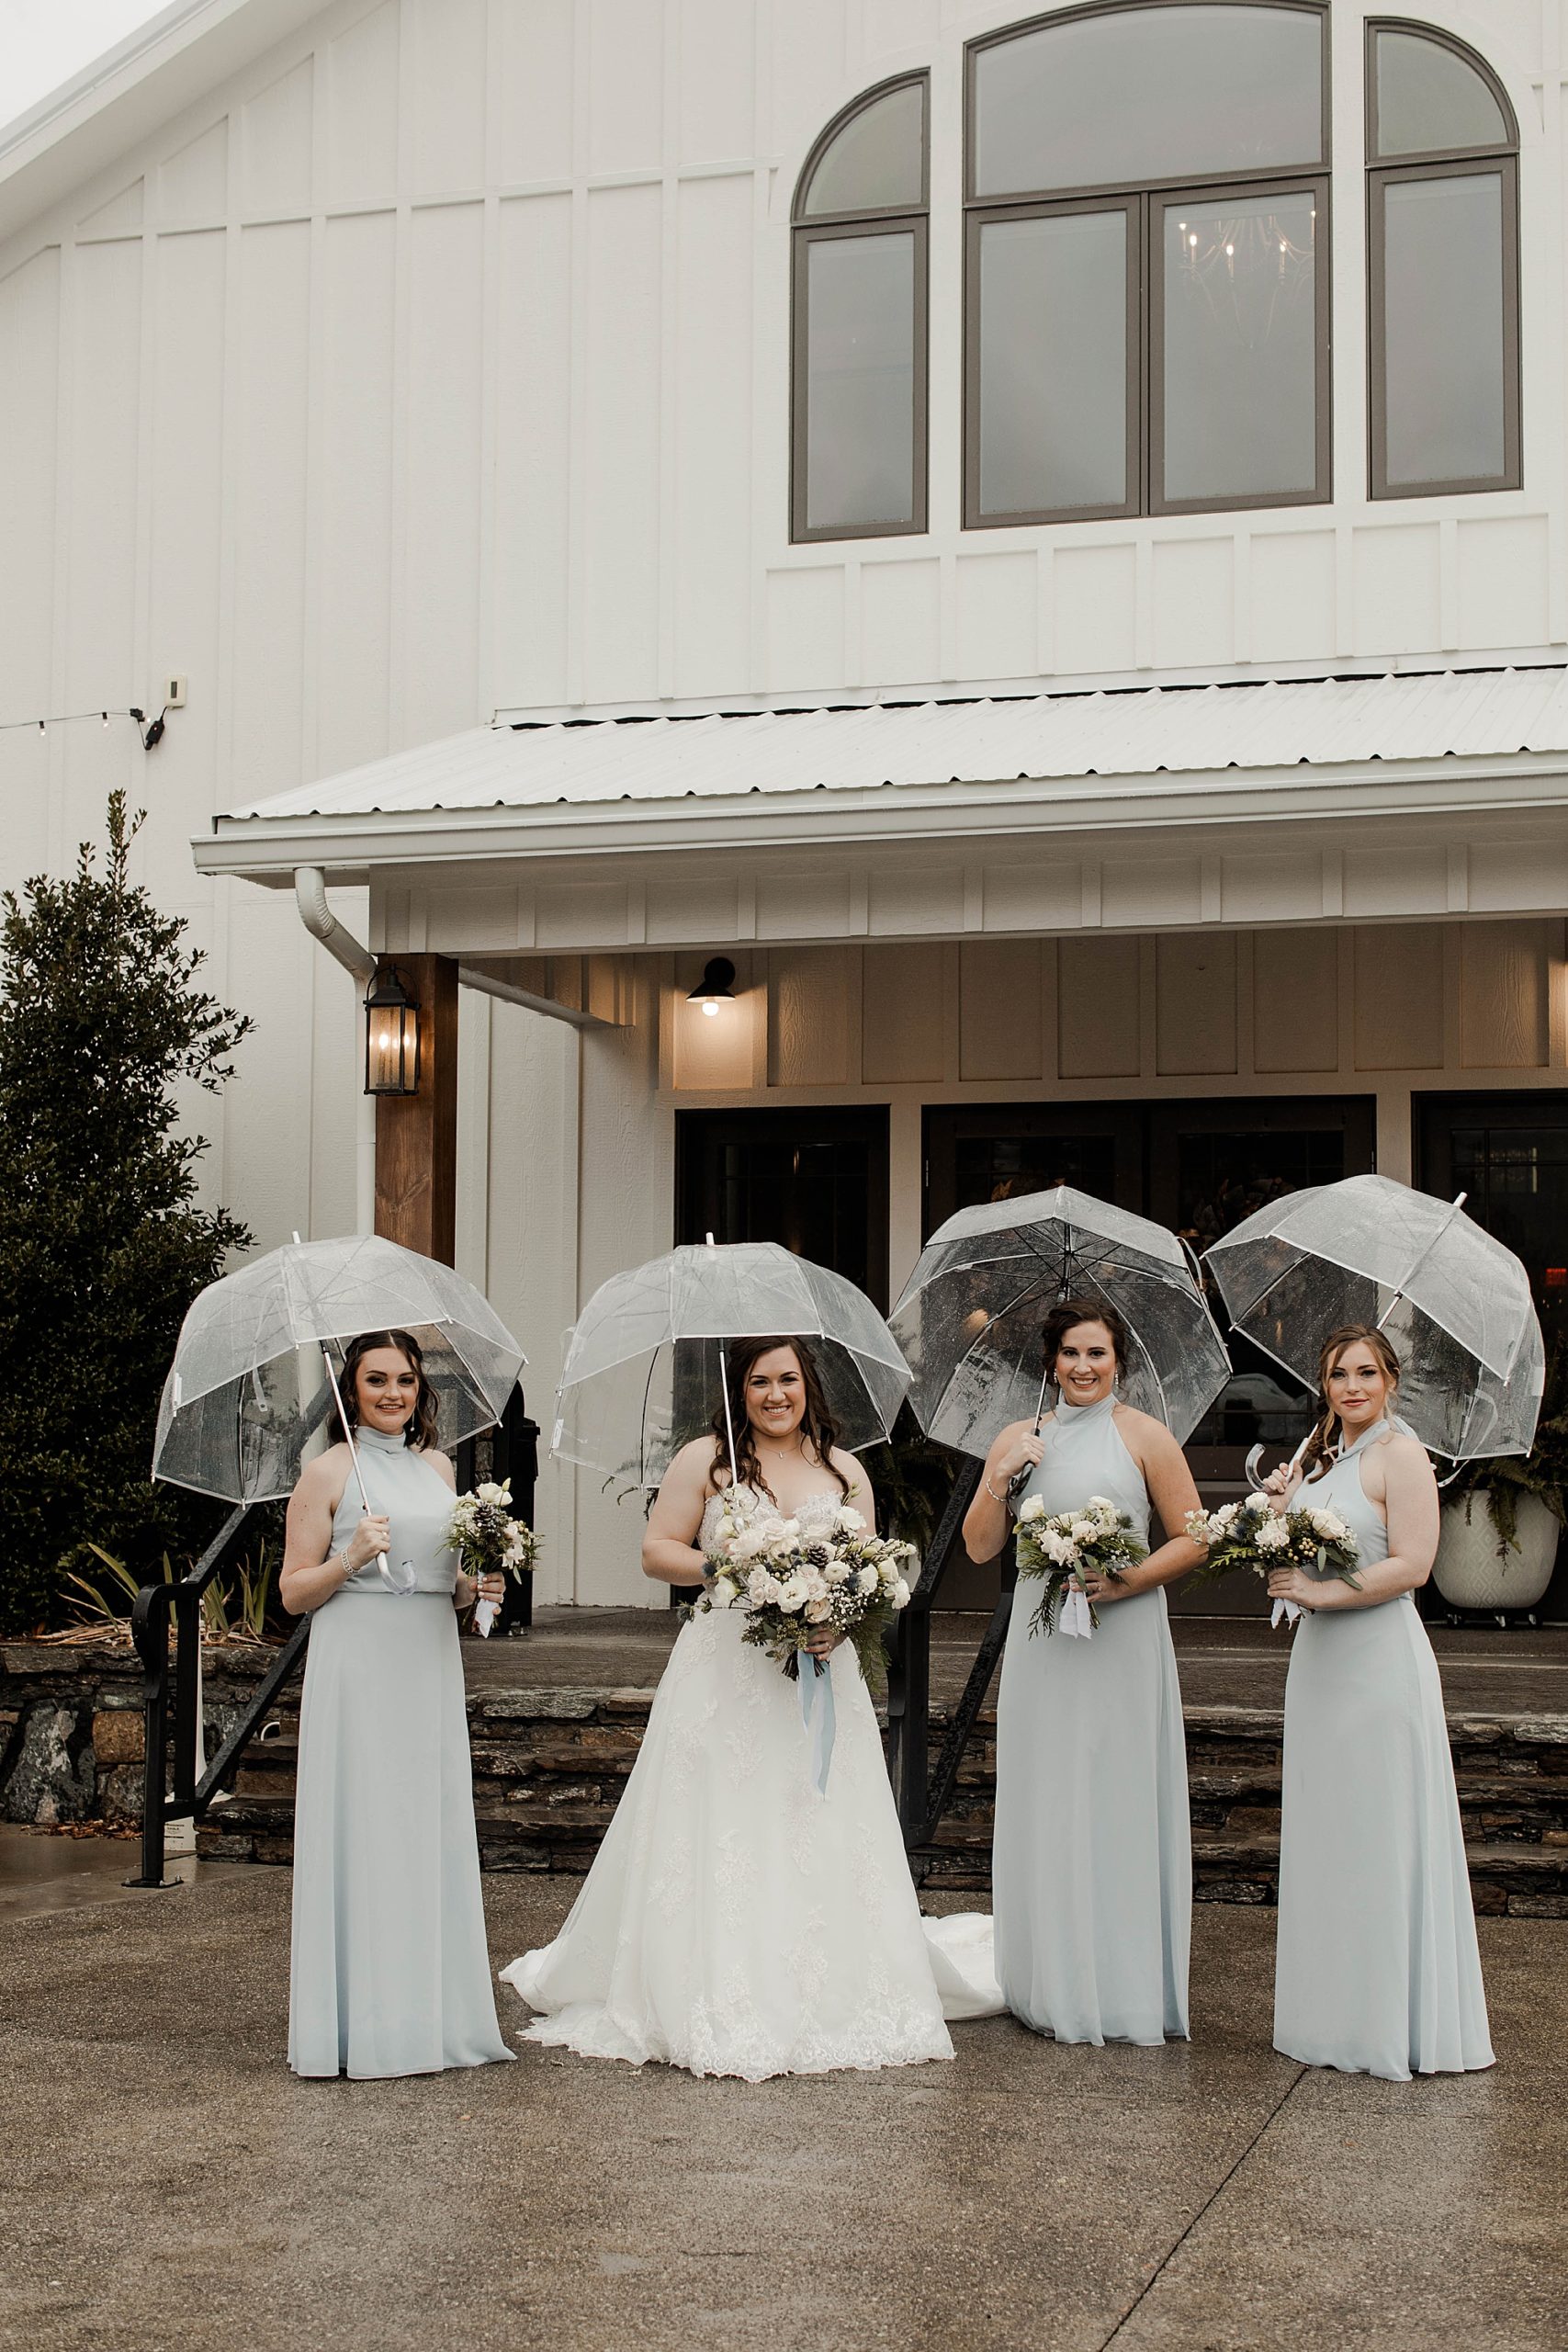 rainy wedding pictures 